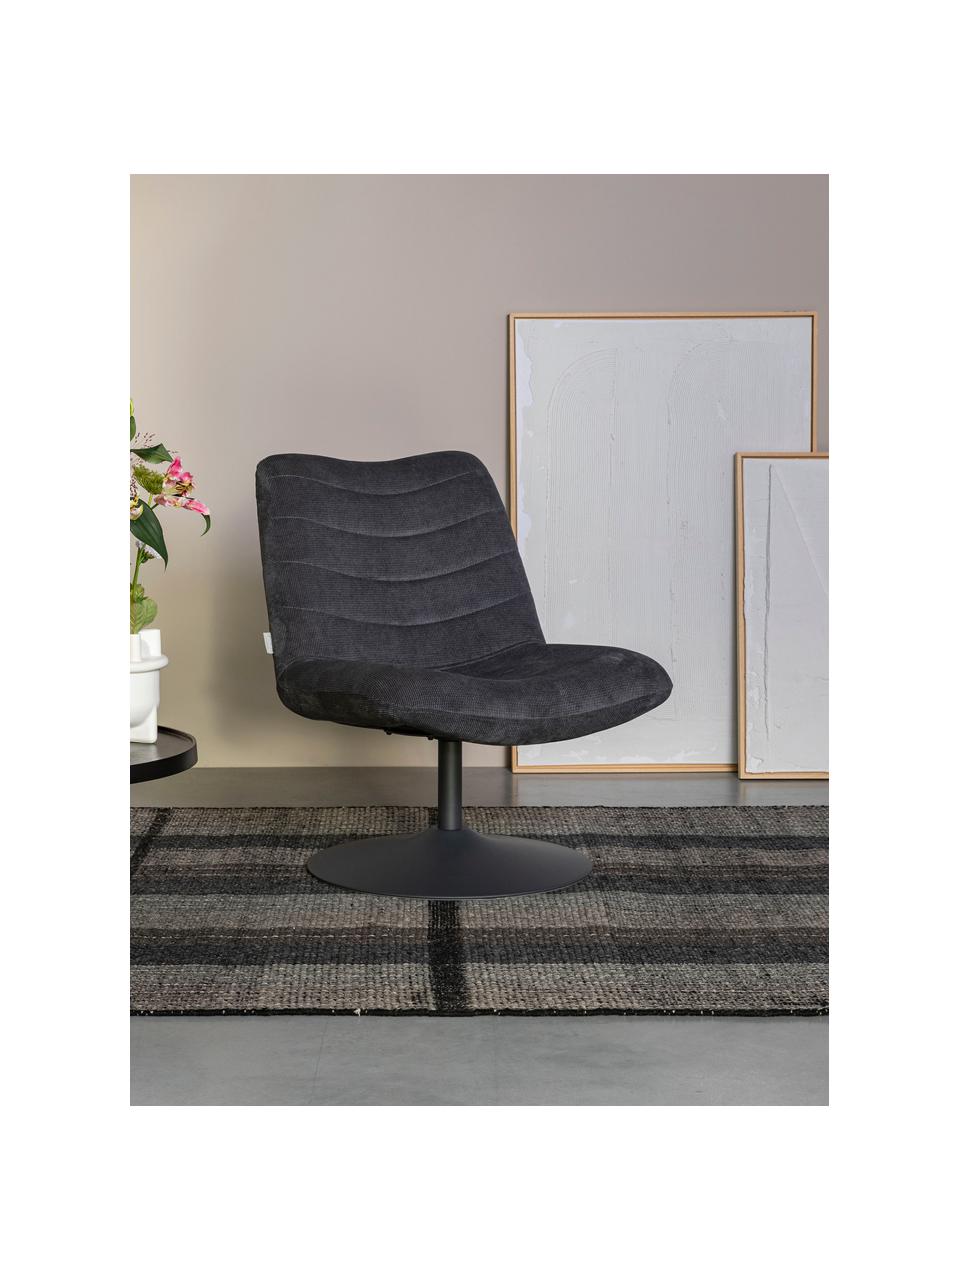 Chaise lounge gris foncé Bubba, Gris foncé, larg. 67 x prof. 81 cm